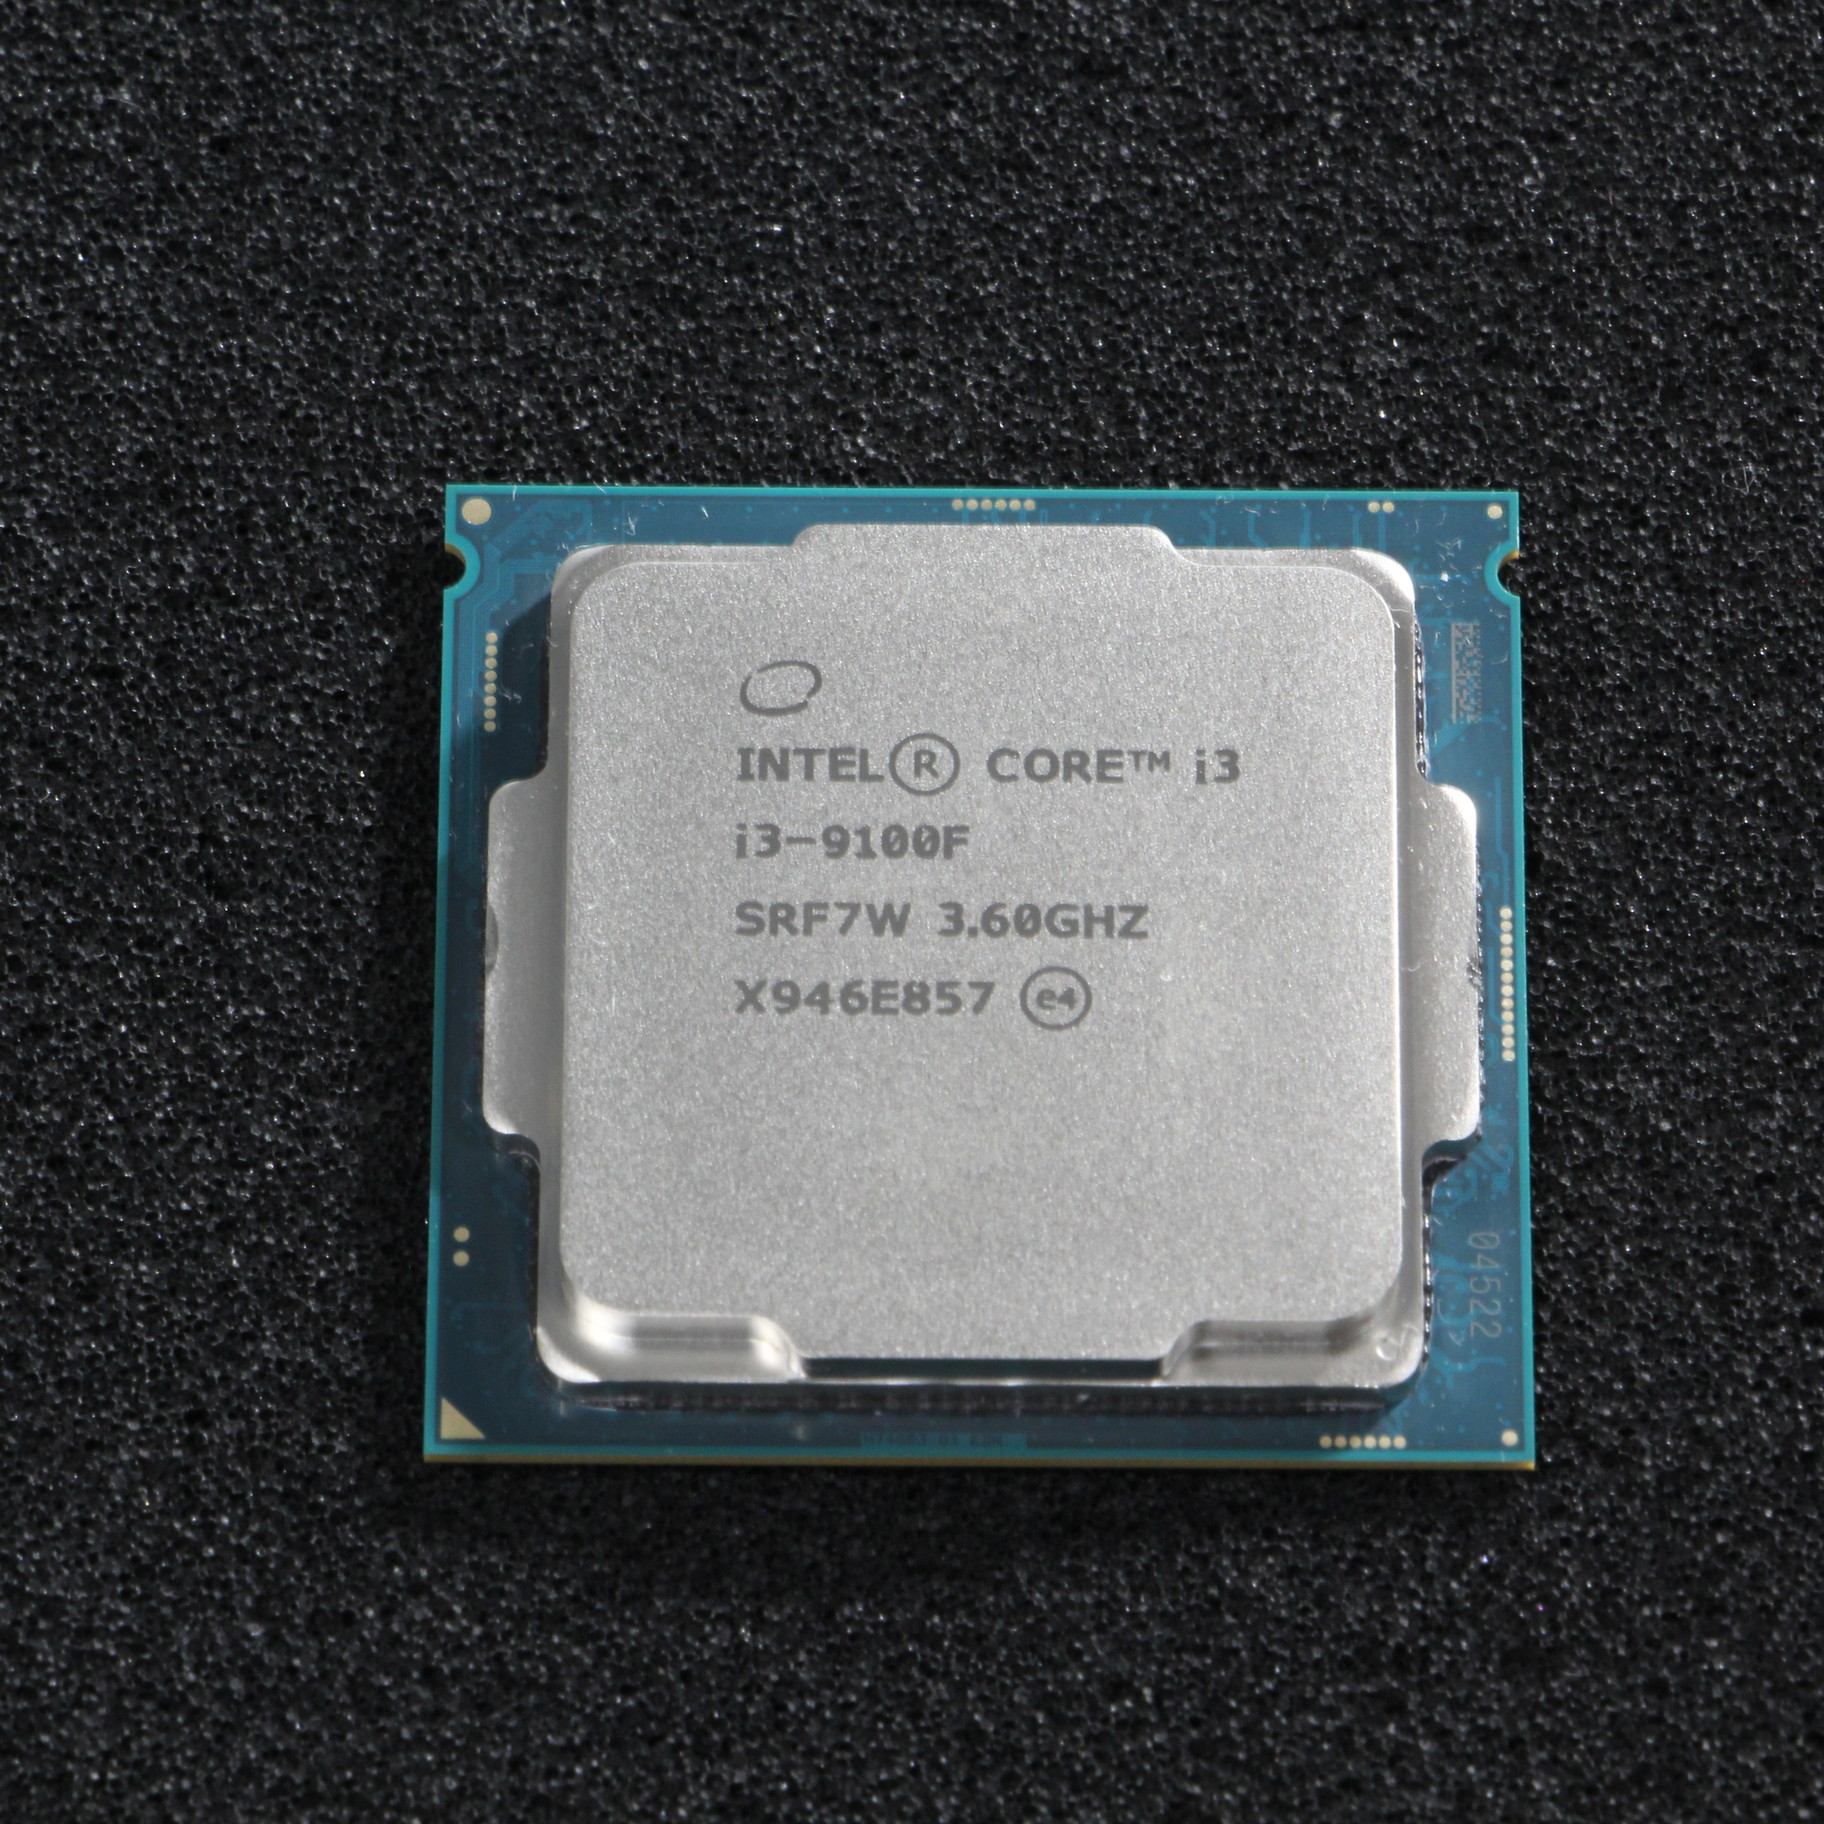 Intel core i3-9100F